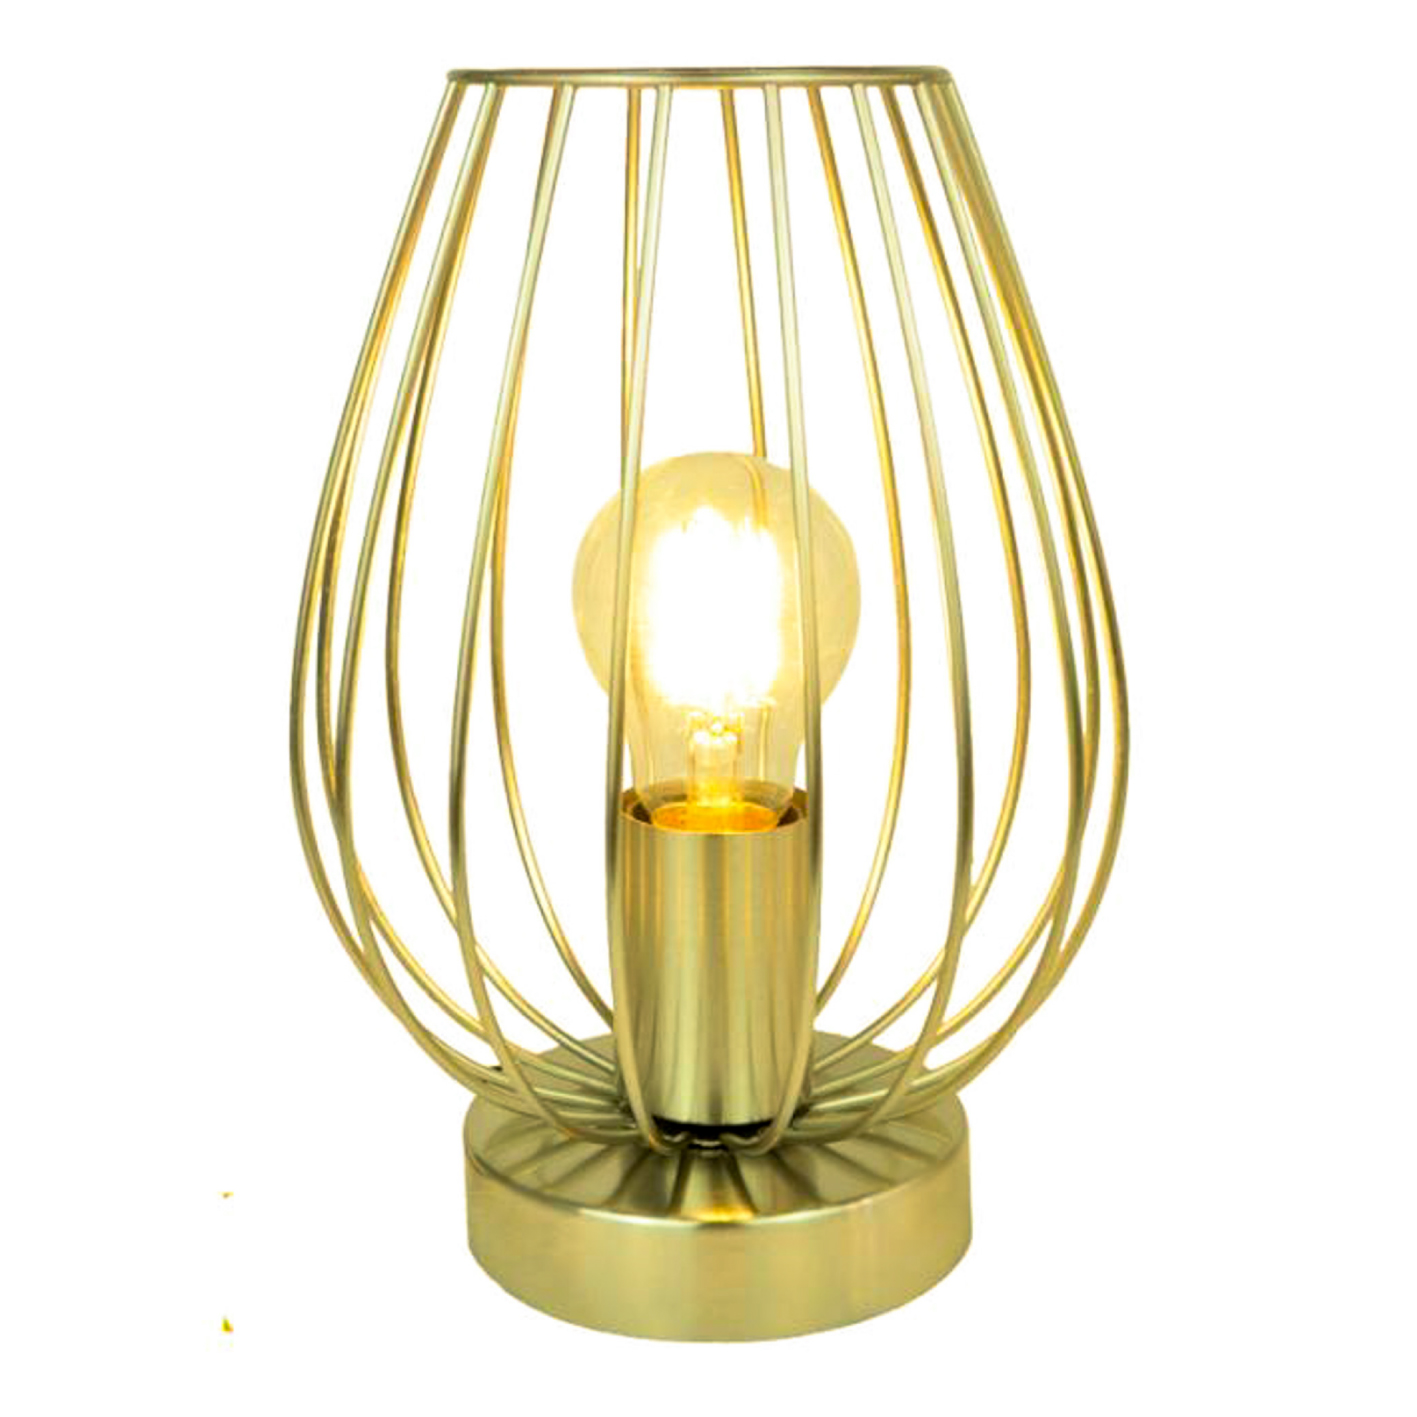 Lampe de chevet glamour, métal doré imitation laiton - E27 – H 24cm